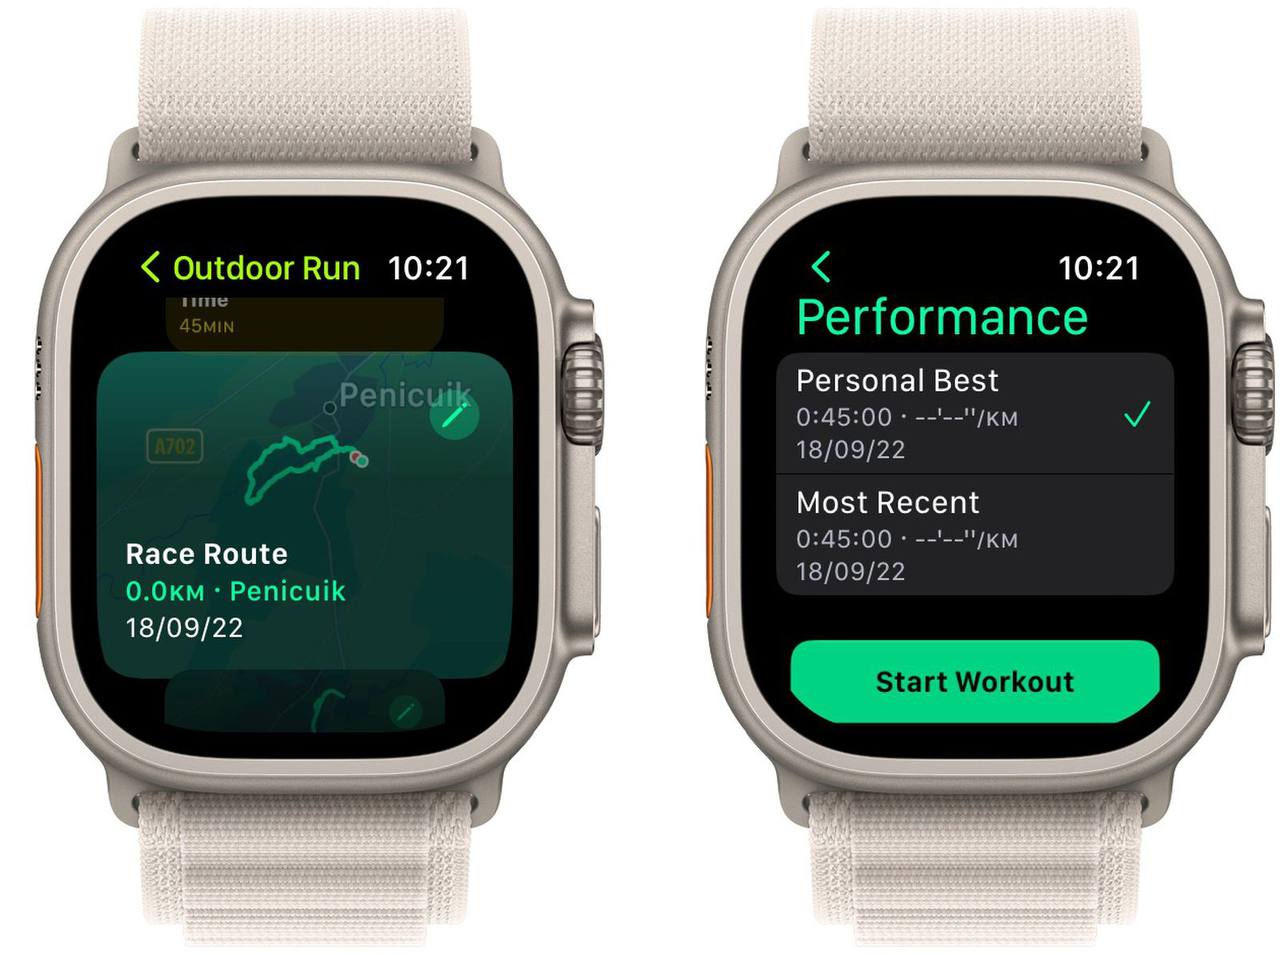 Новая возможность записи и следованию маршруту на Apple Watch 